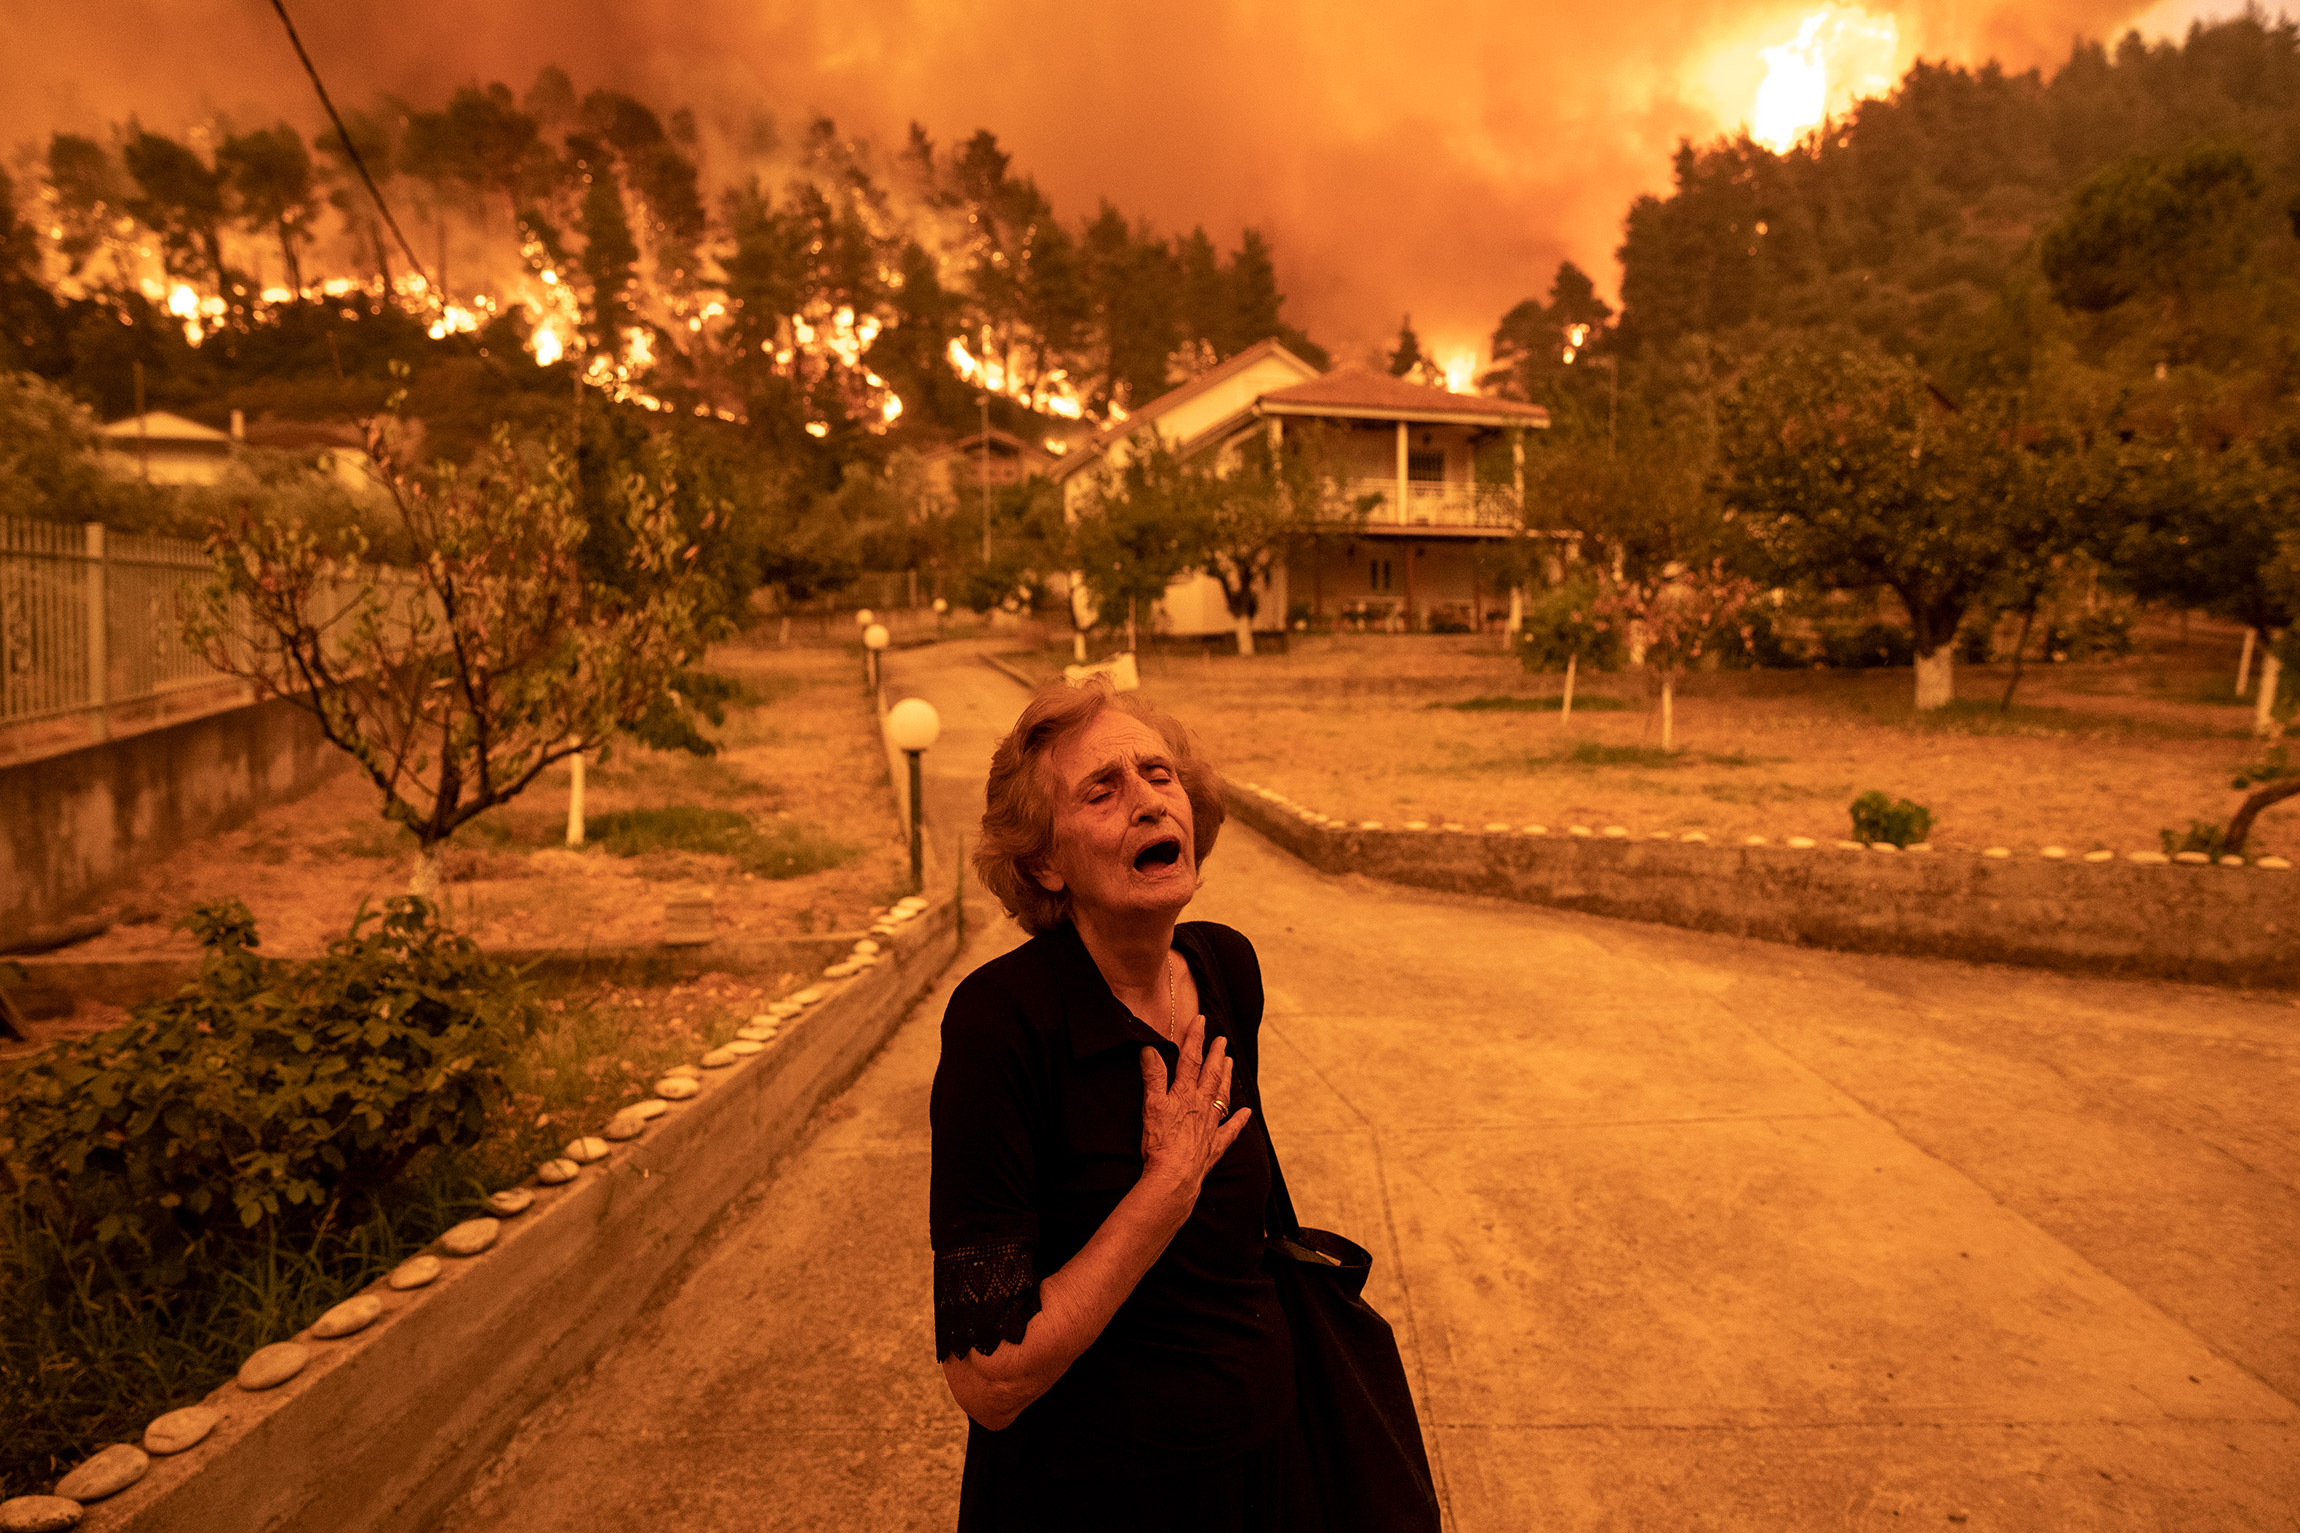 Автор: Константинос Цакалидис, Греция.

Женщина плачет после того, как лесной пожар достиг ее дома в деревне Гувес на острове Эвбея, Греция, 8 августа 2021 года. Пожары были вызваны самой жаркой погодой в стране за последние 30 лет